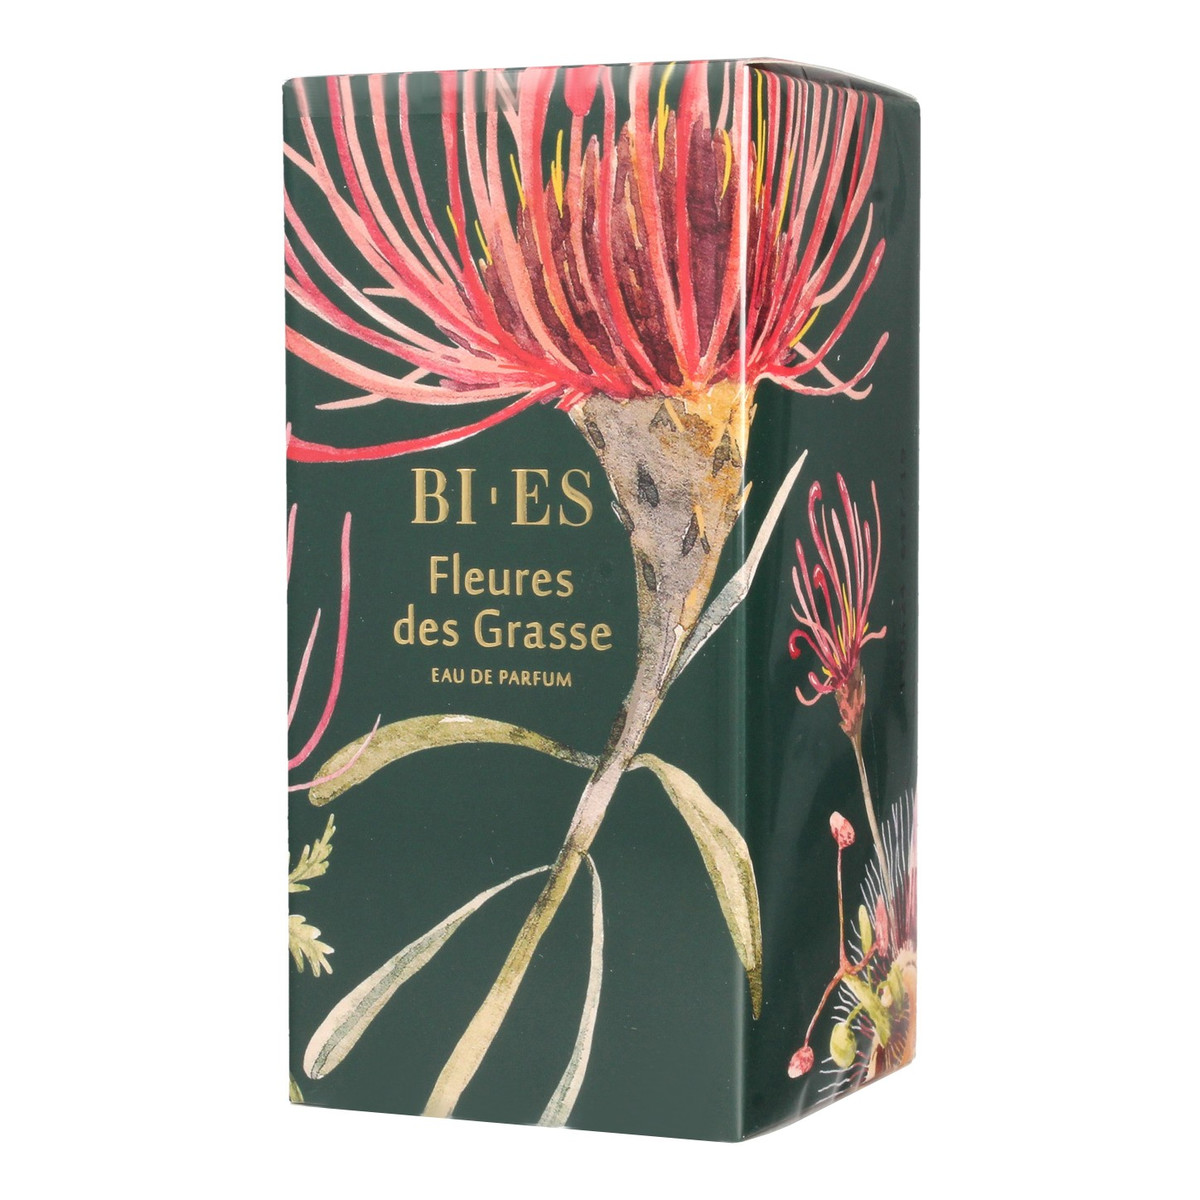 Bi-es Fleures des Grasse Woda perfumowana 50ml